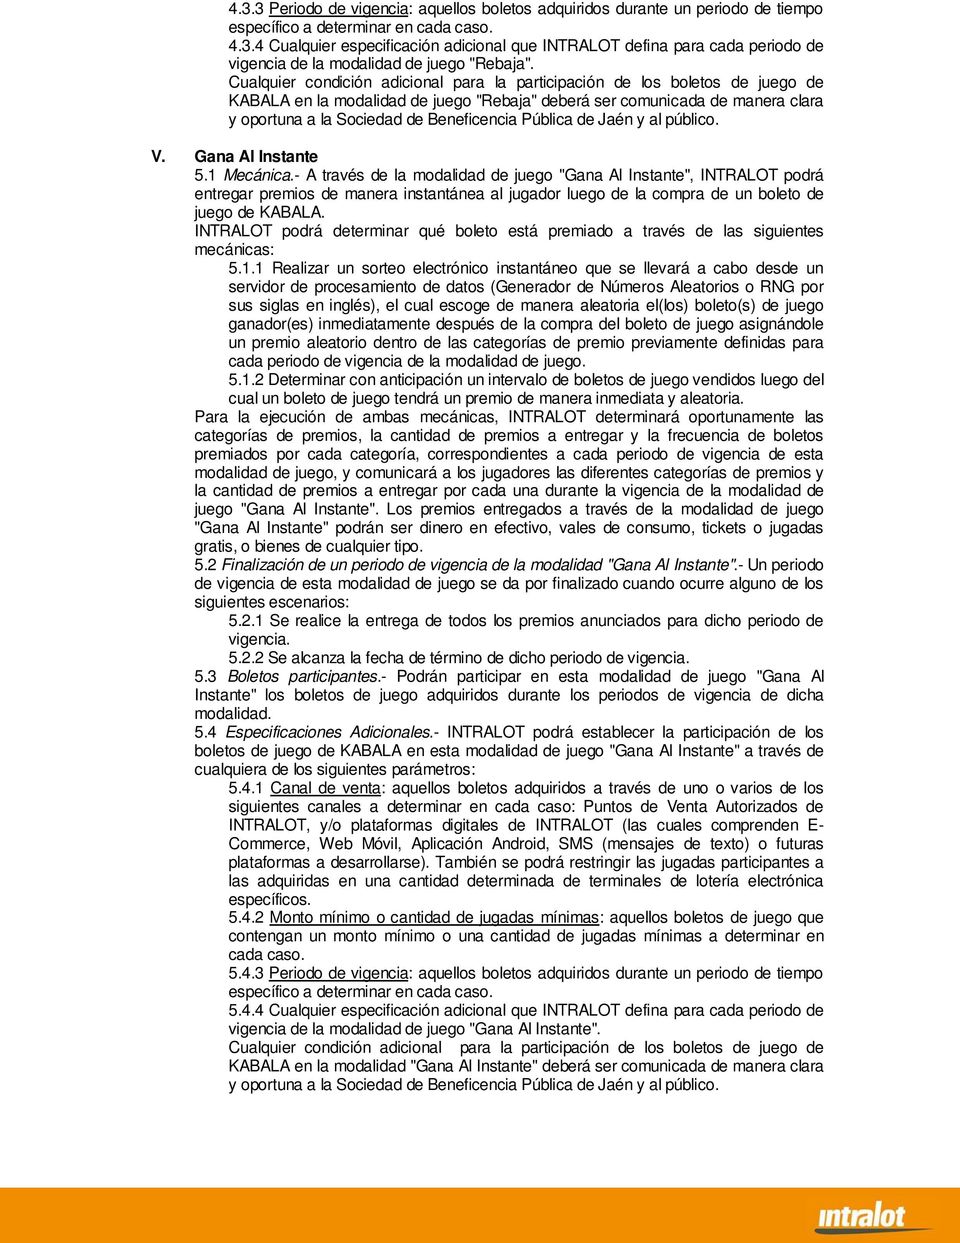 Pública de Jaén y al público. V. Gana Al Instante 5.1 Mecánica.